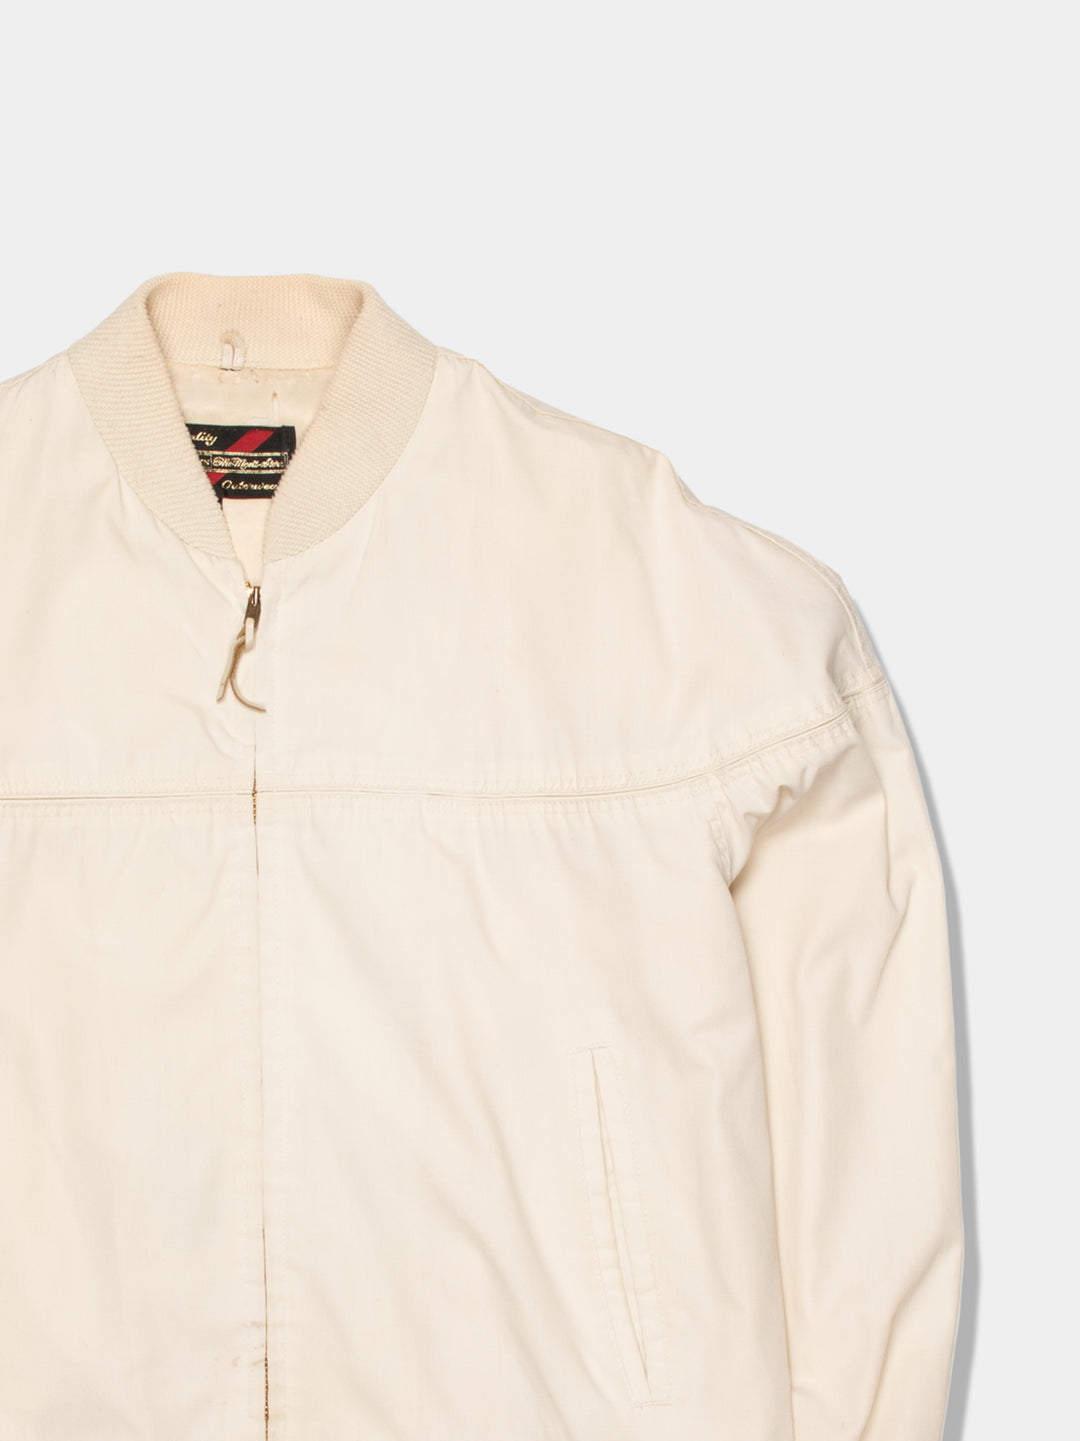 80s Sears Cream Harrington Jacket (M)